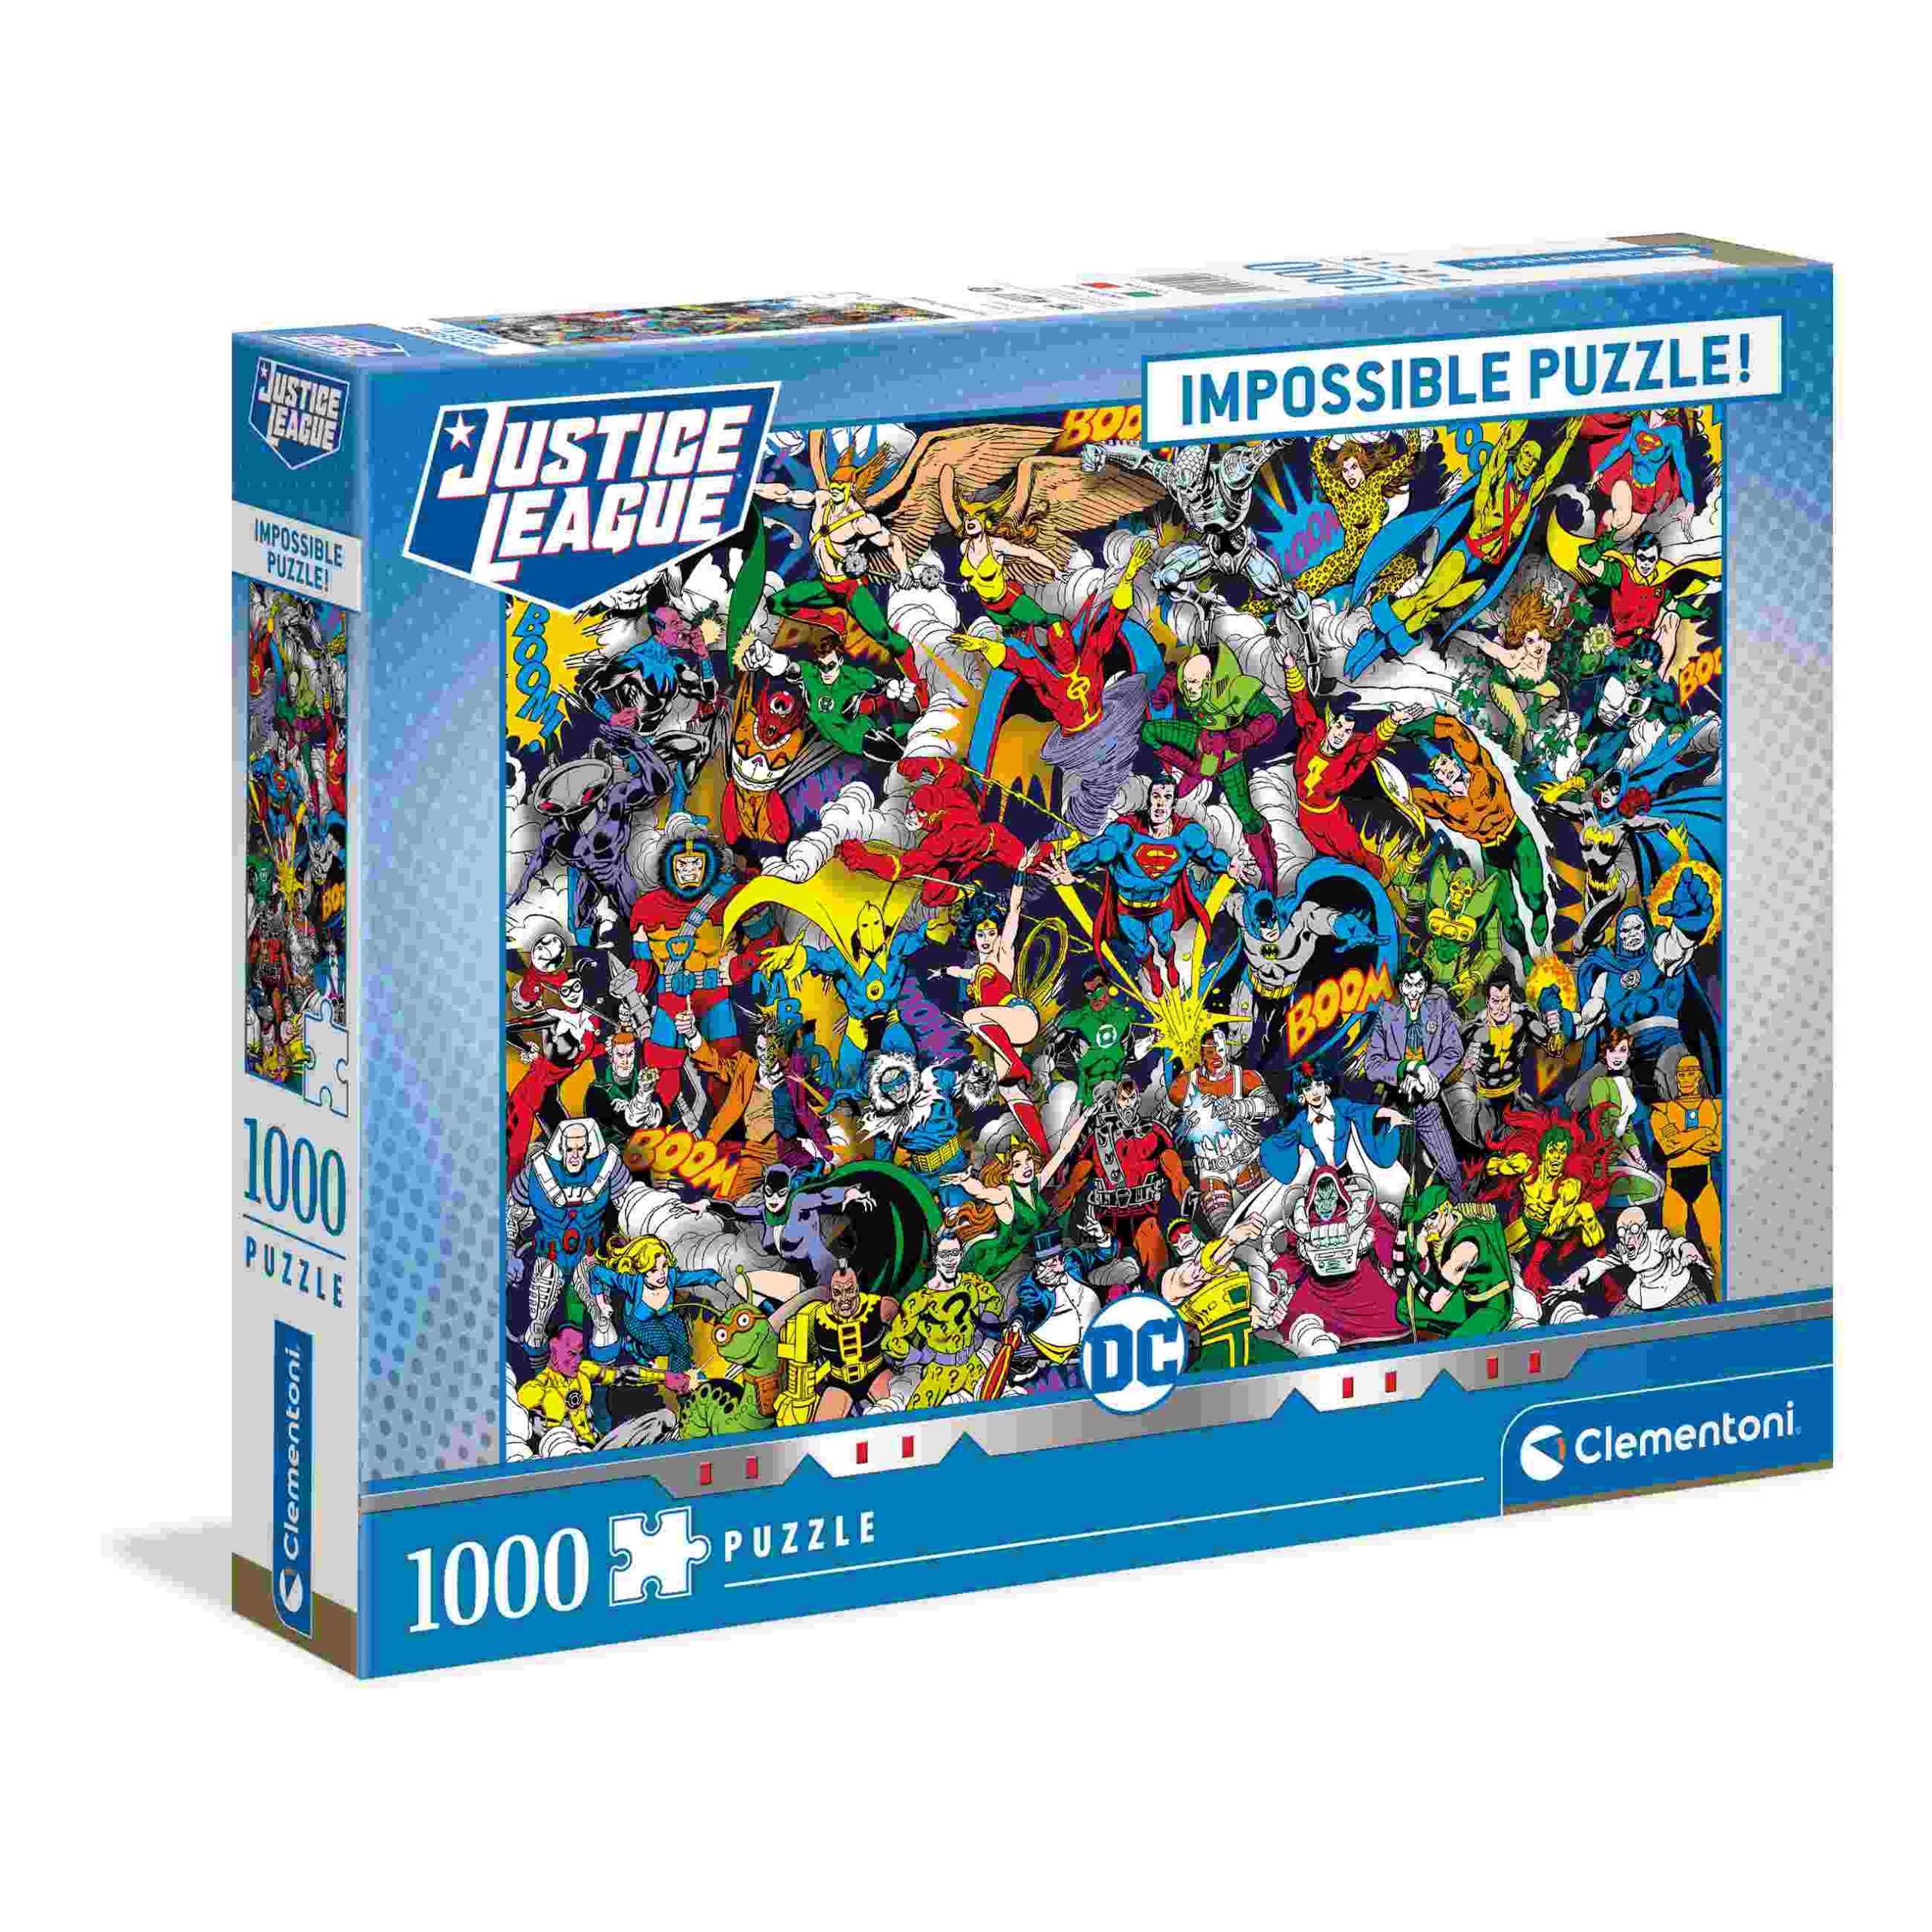 Clementoni puzzle impossible justice league - 1000 pezzi - CLEMENTONI